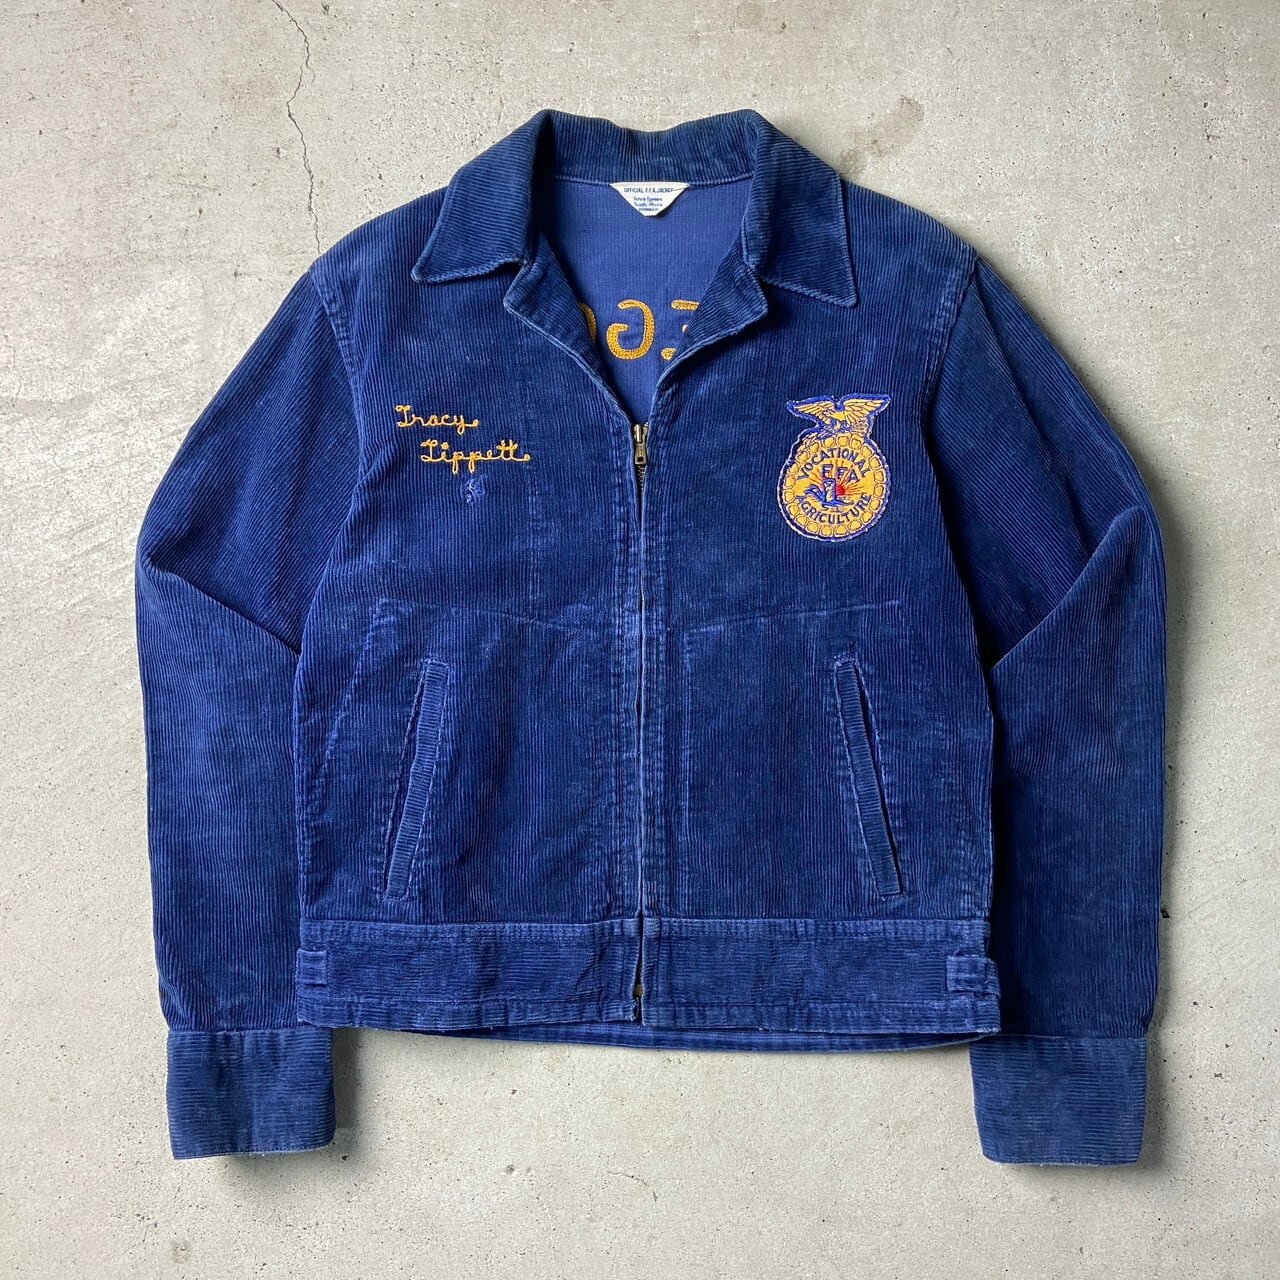 60〜70年代 FFA アメリカ国立農業学校 ファーマーズジャケット